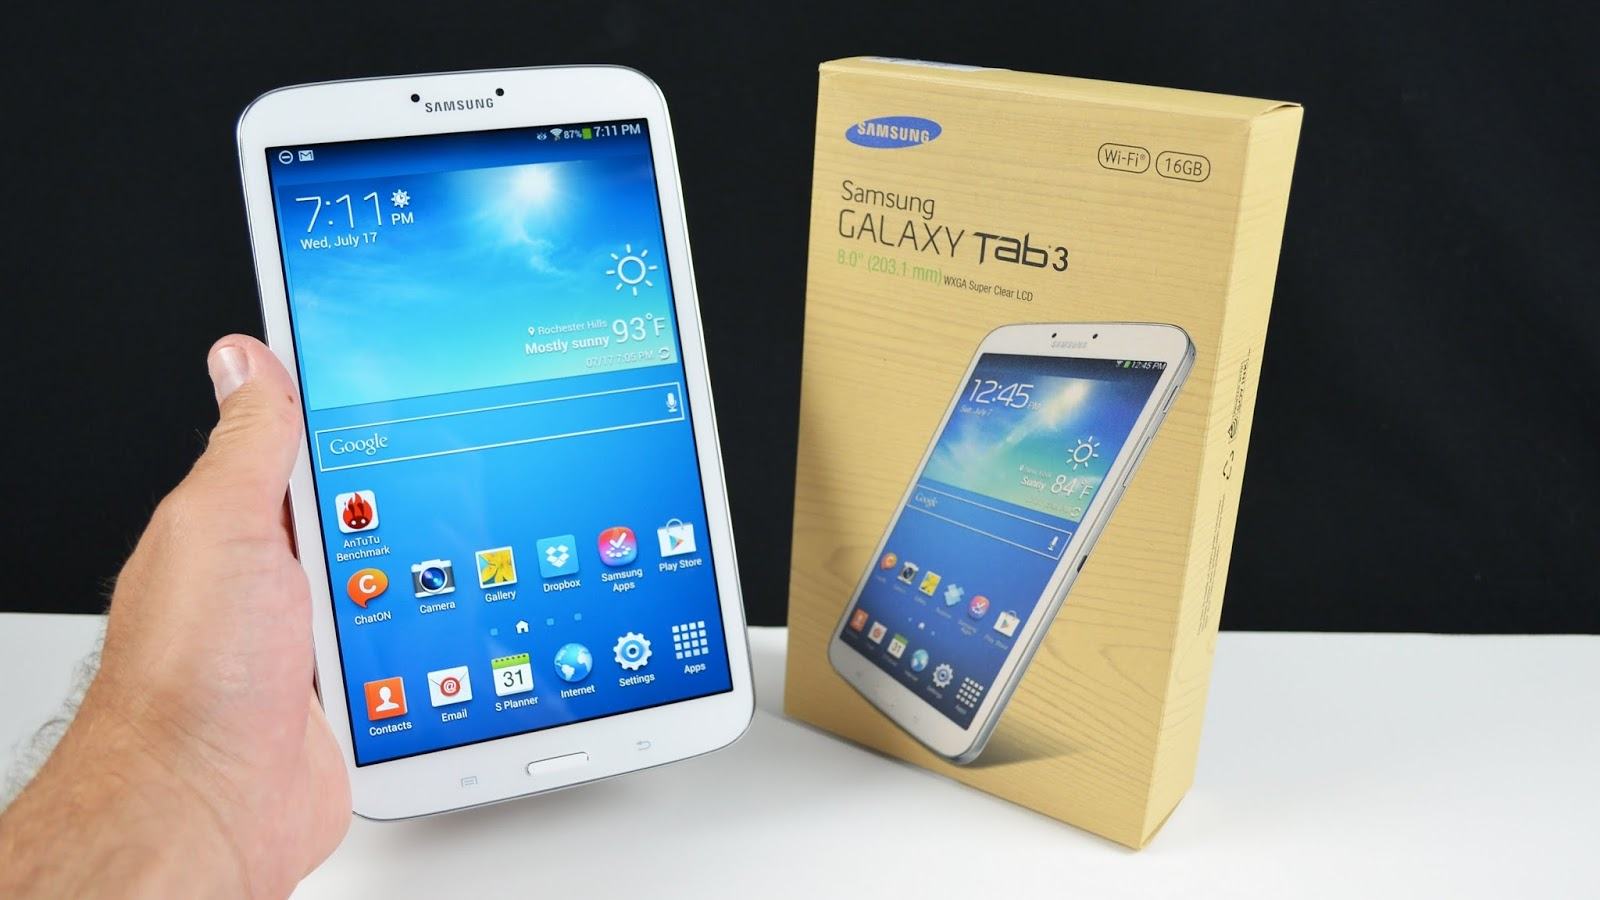 Samsung Galaxy tab E 9.6 inch (T561)